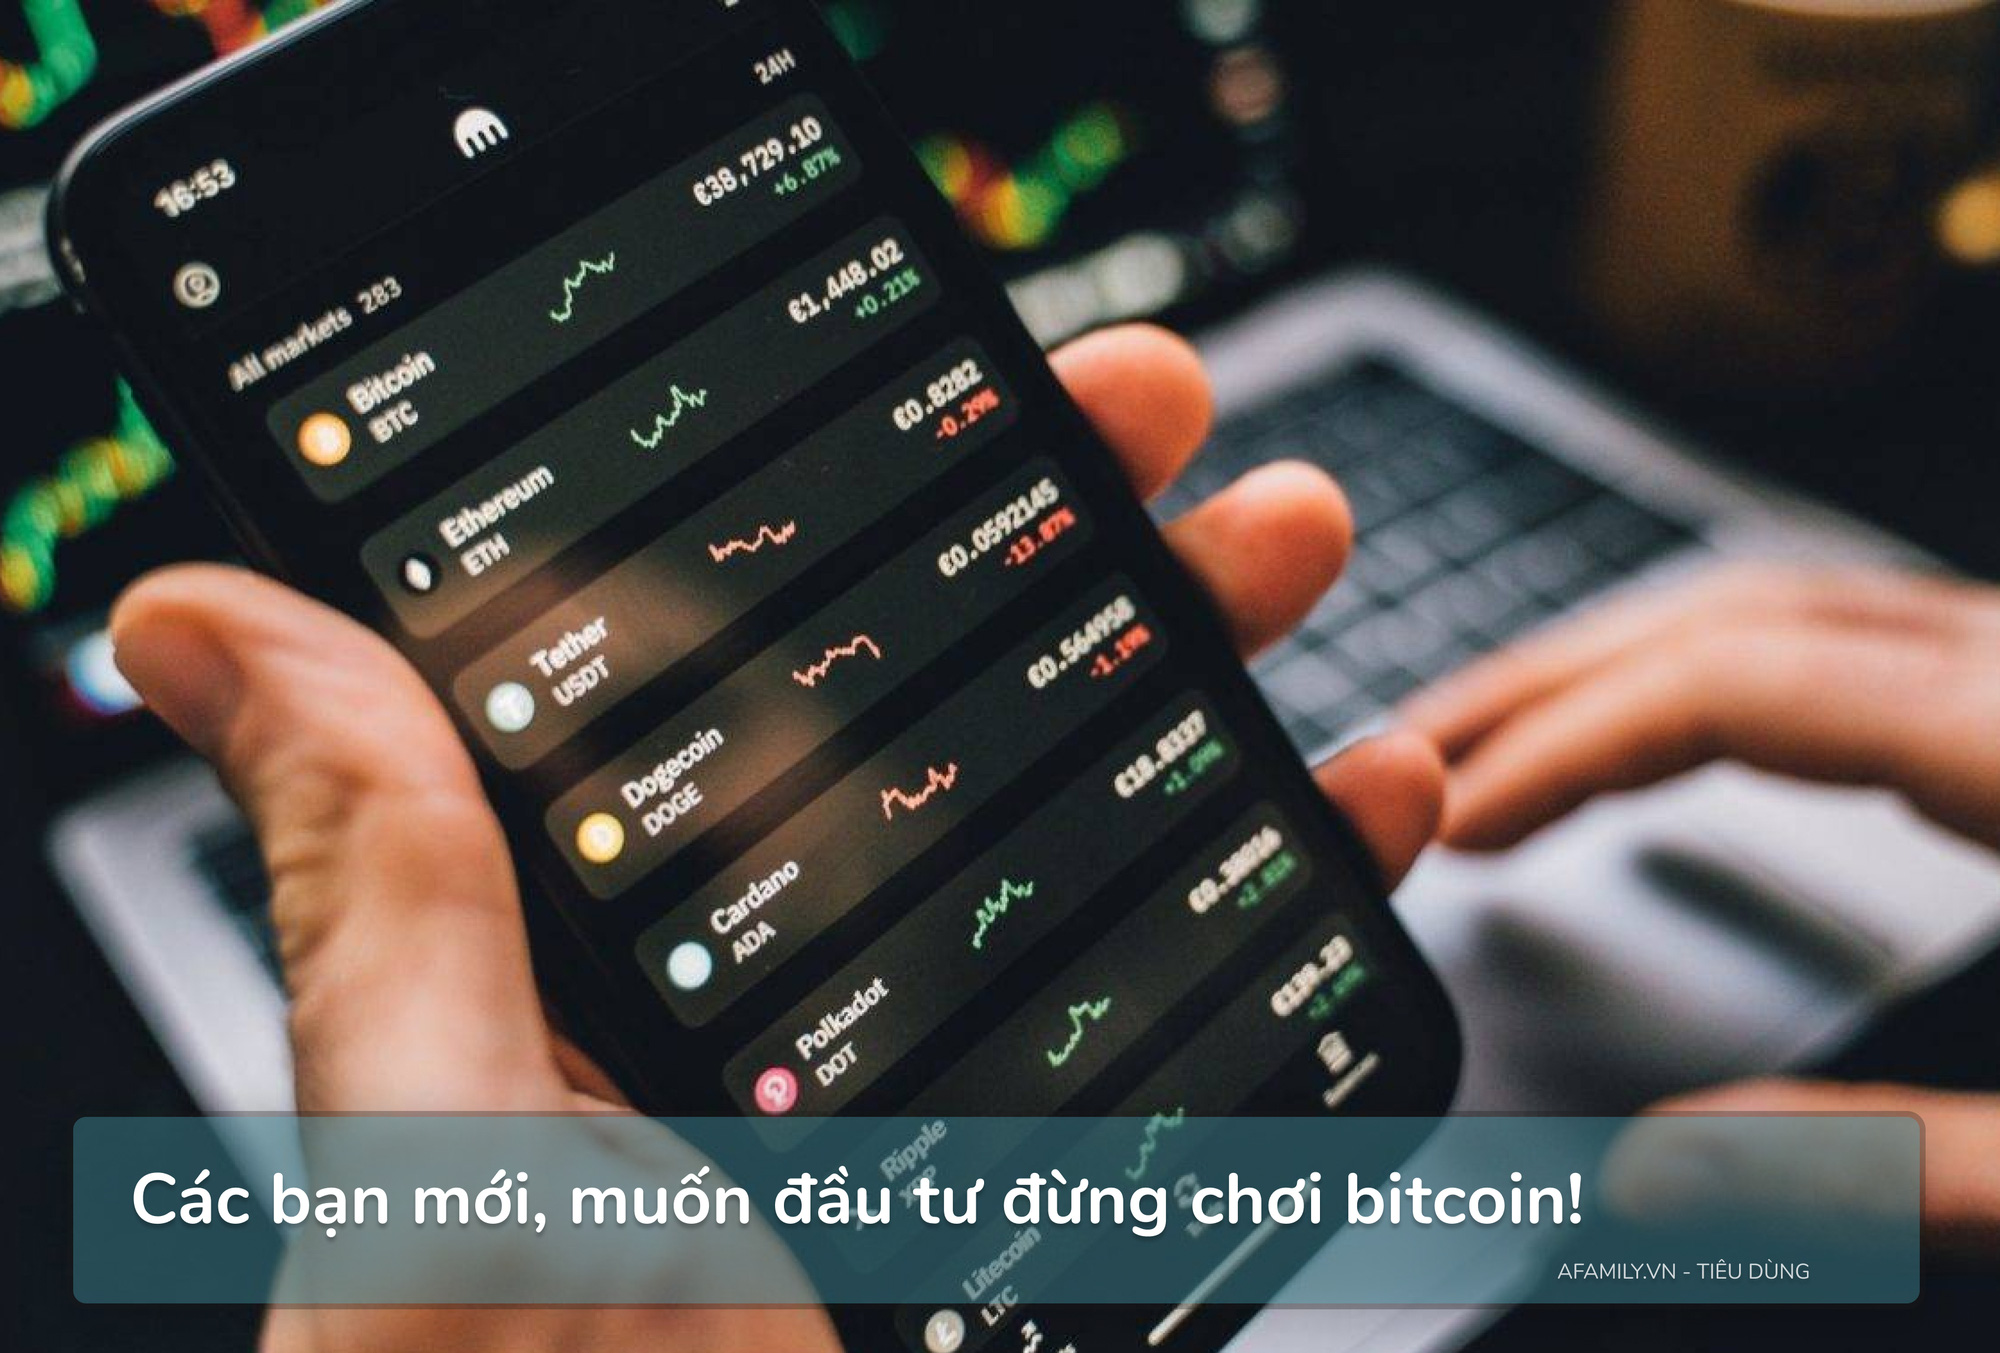 “Các bạn mới, muốn đầu tư đừng chơi bitcoin!” - lời khuyên thấm thía từ nữ đầu tư 8x đang loay hoay với khoản lỗ gần 1 tỷ đồng khi dấn thân vào tiền ảo - Ảnh 2.